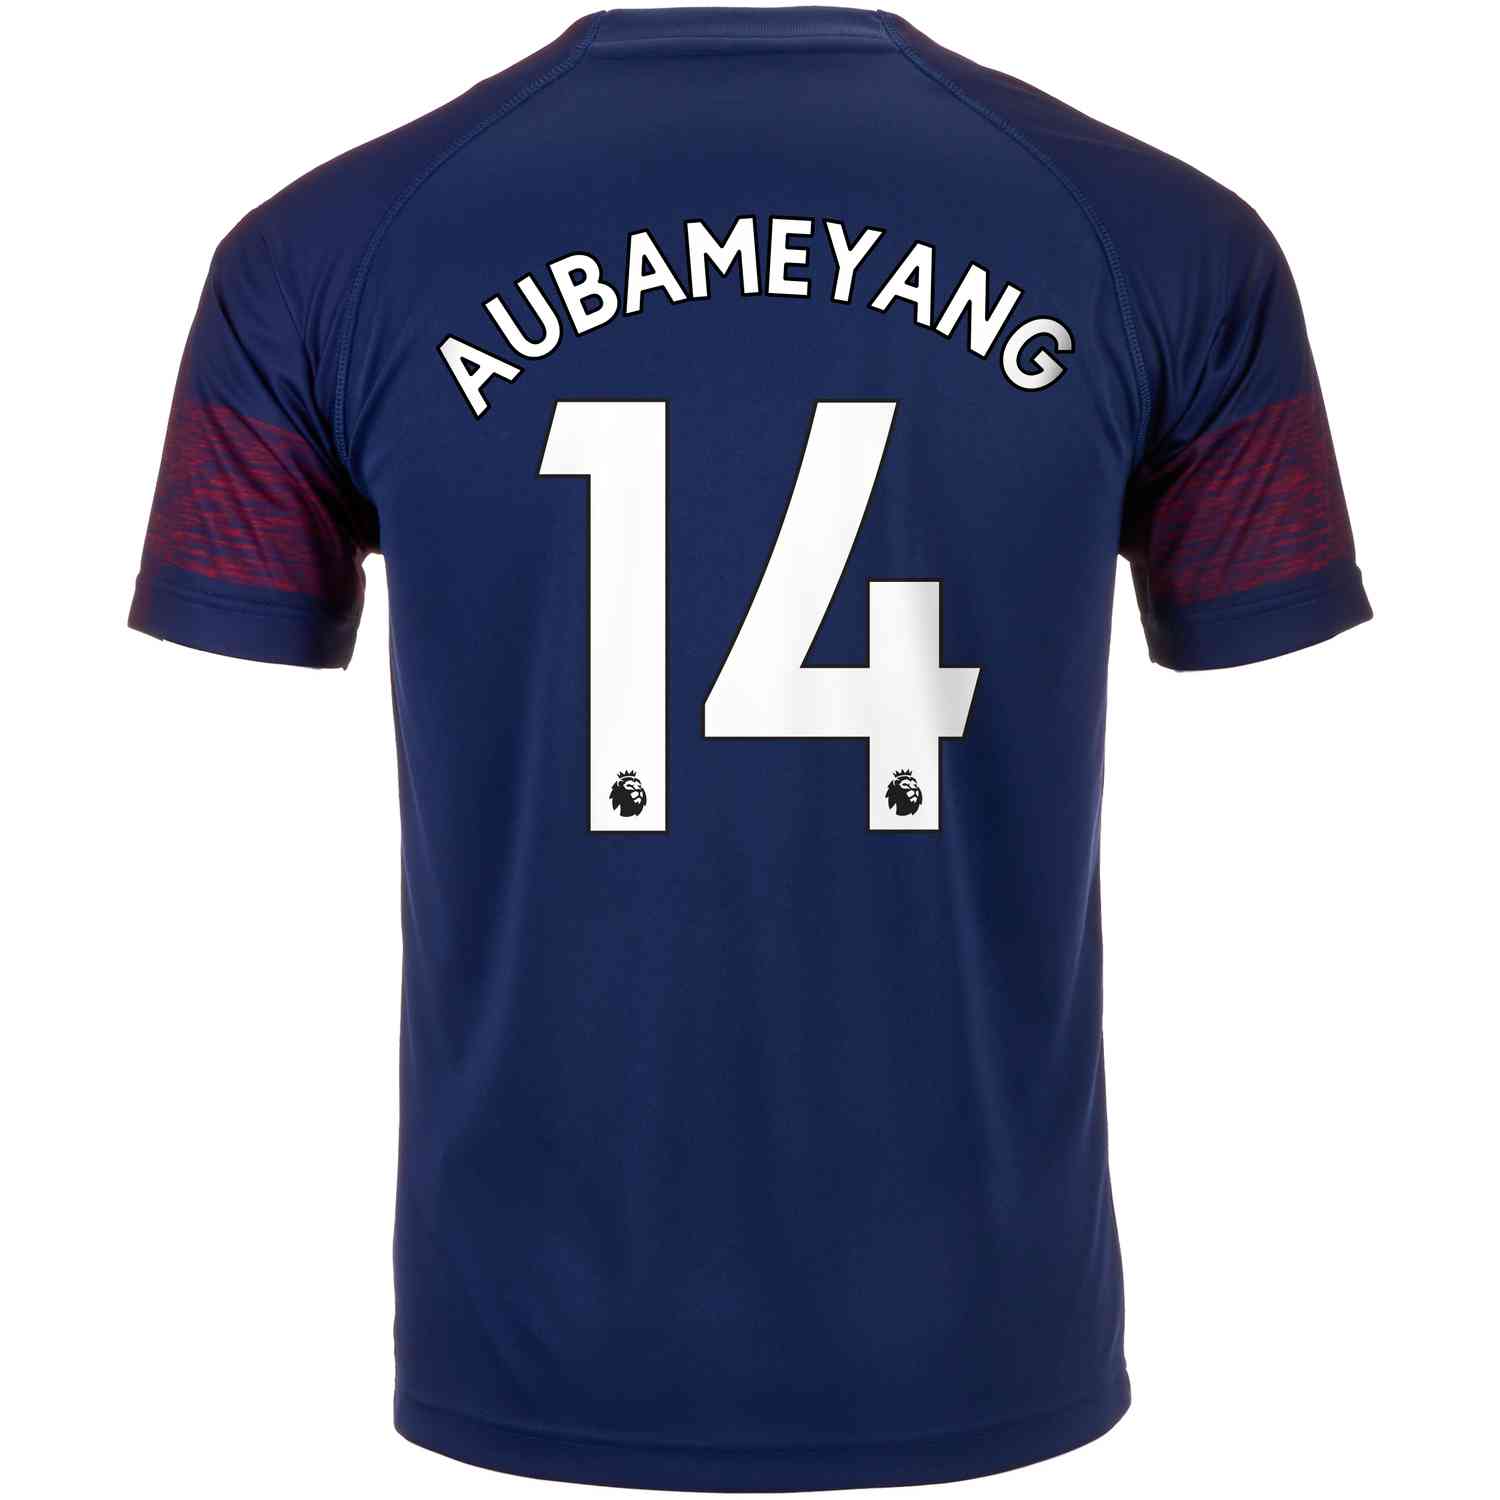 aubameyang away jersey